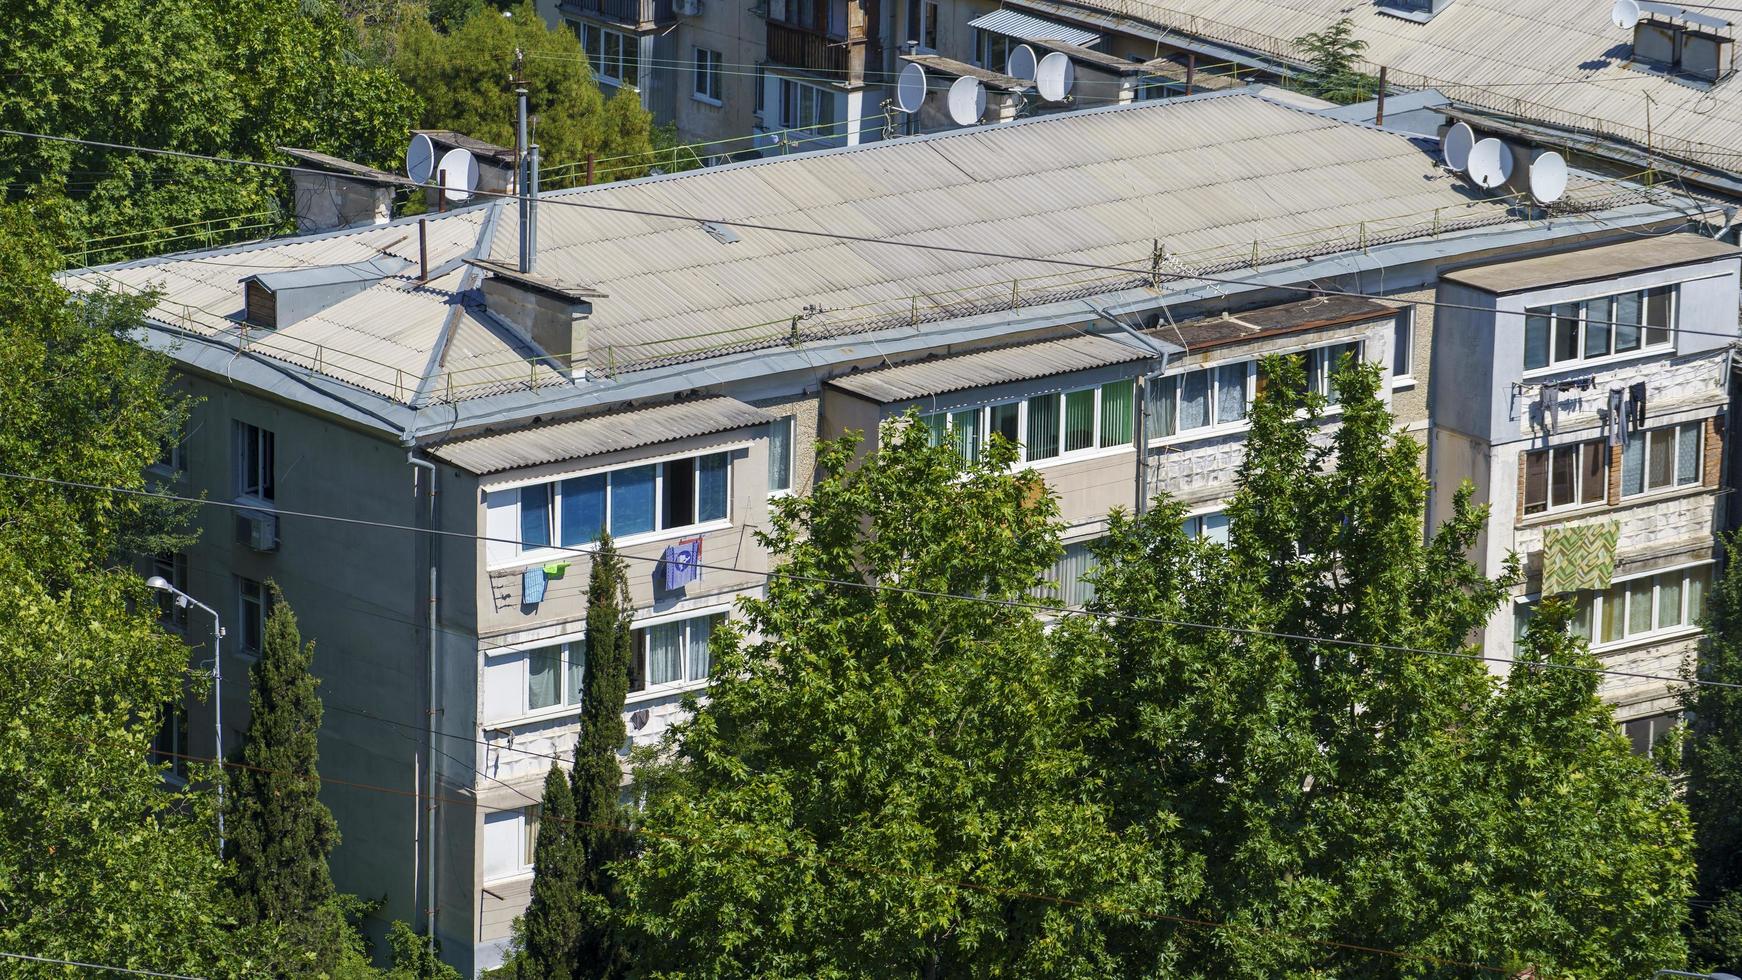 paysage urbain avec vue sur le bâtiment. yalta, crimée photo